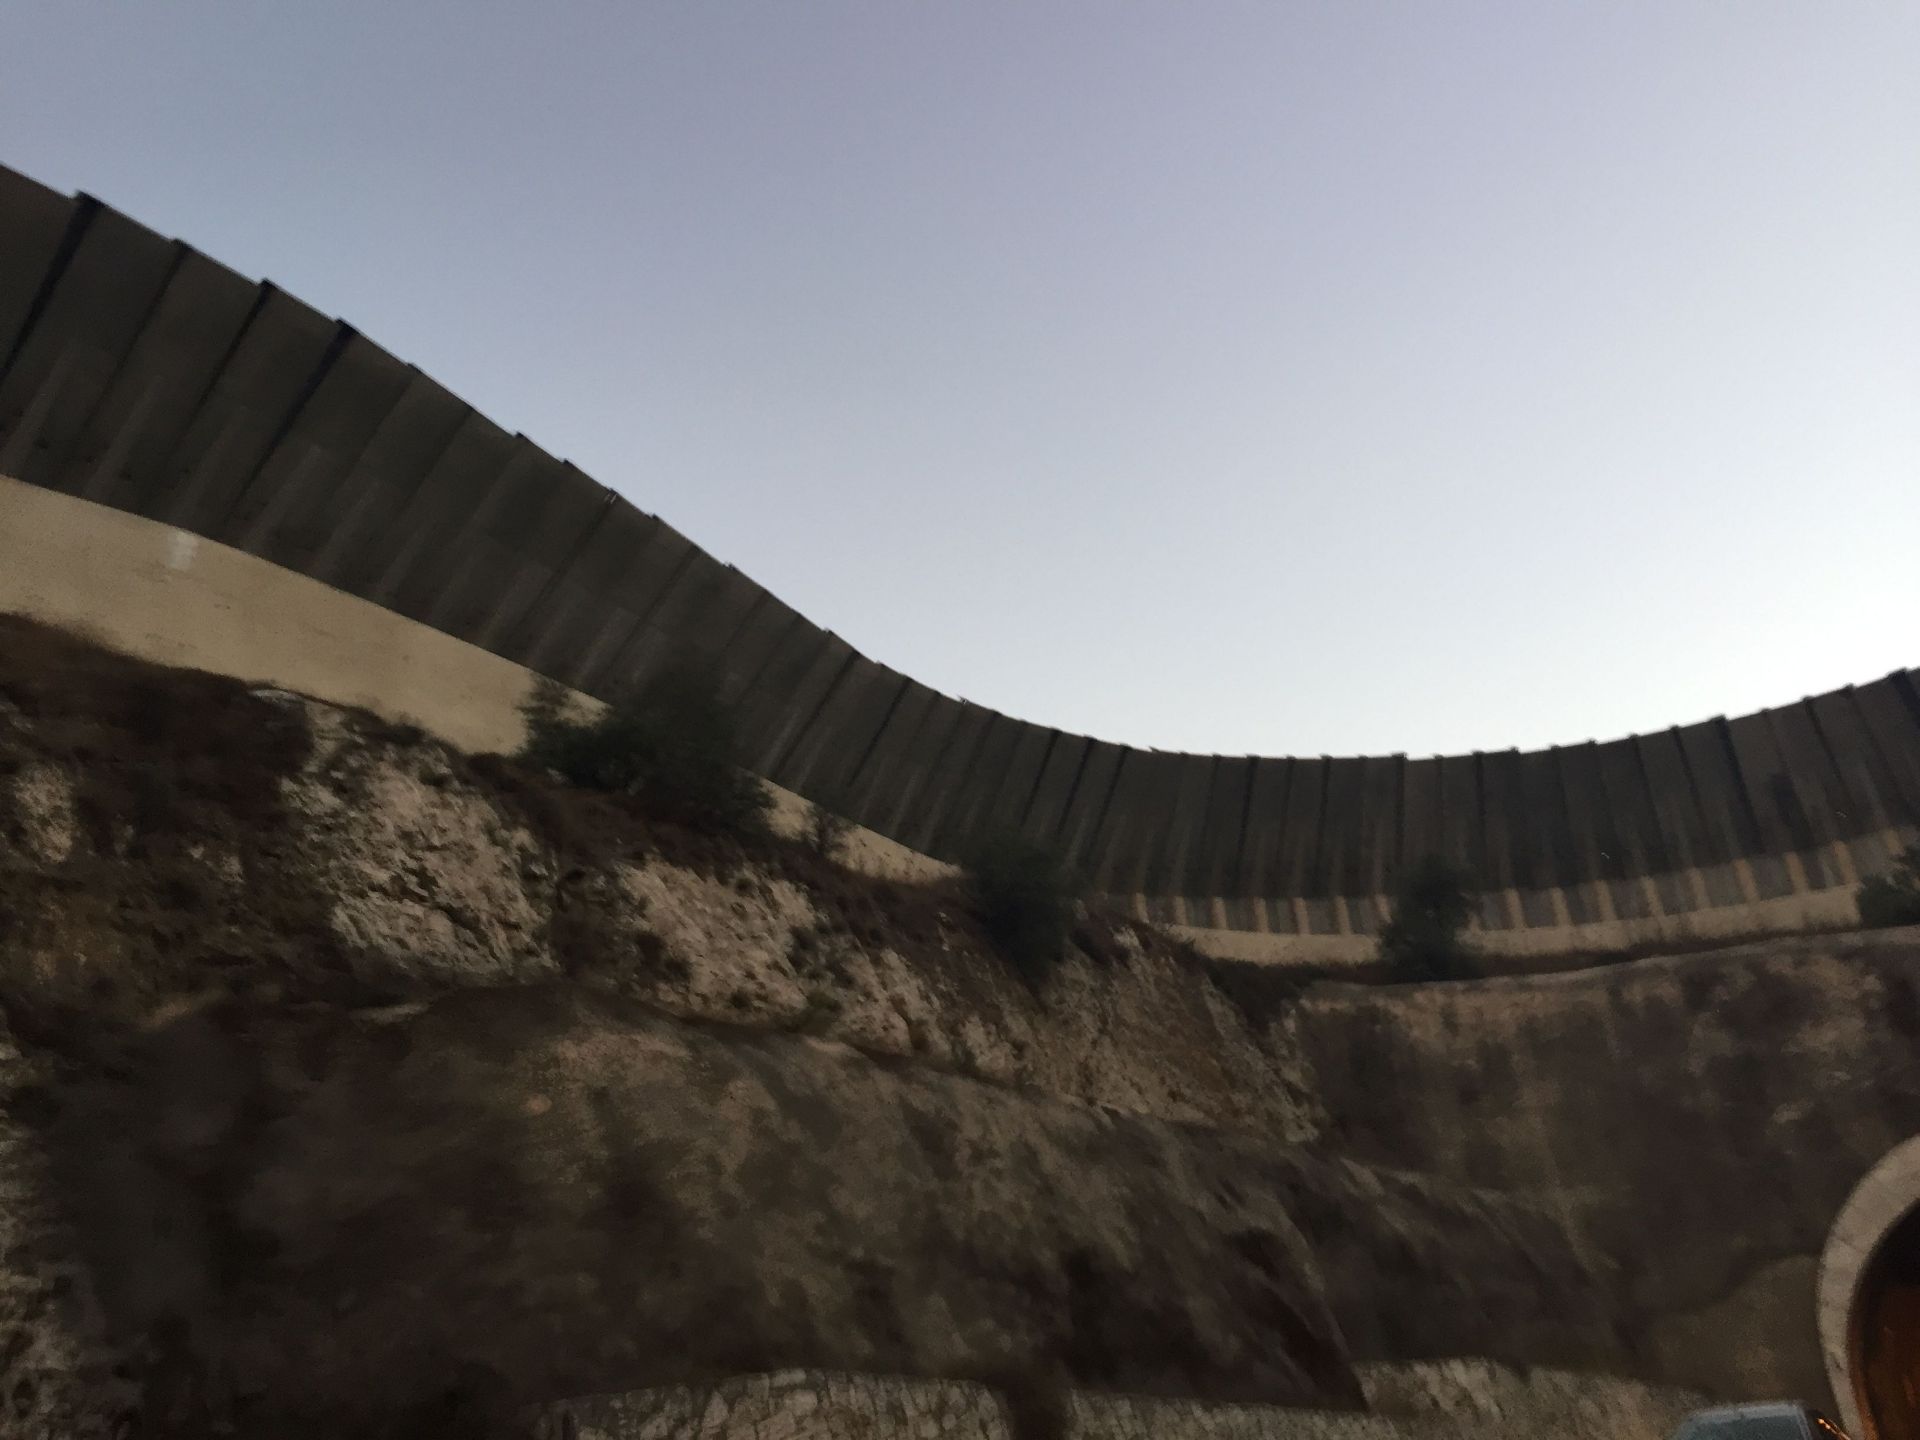 从耶路撒冷打车，直接就可以通过巴以隔离墙到达巴勒斯坦的伯利恒。